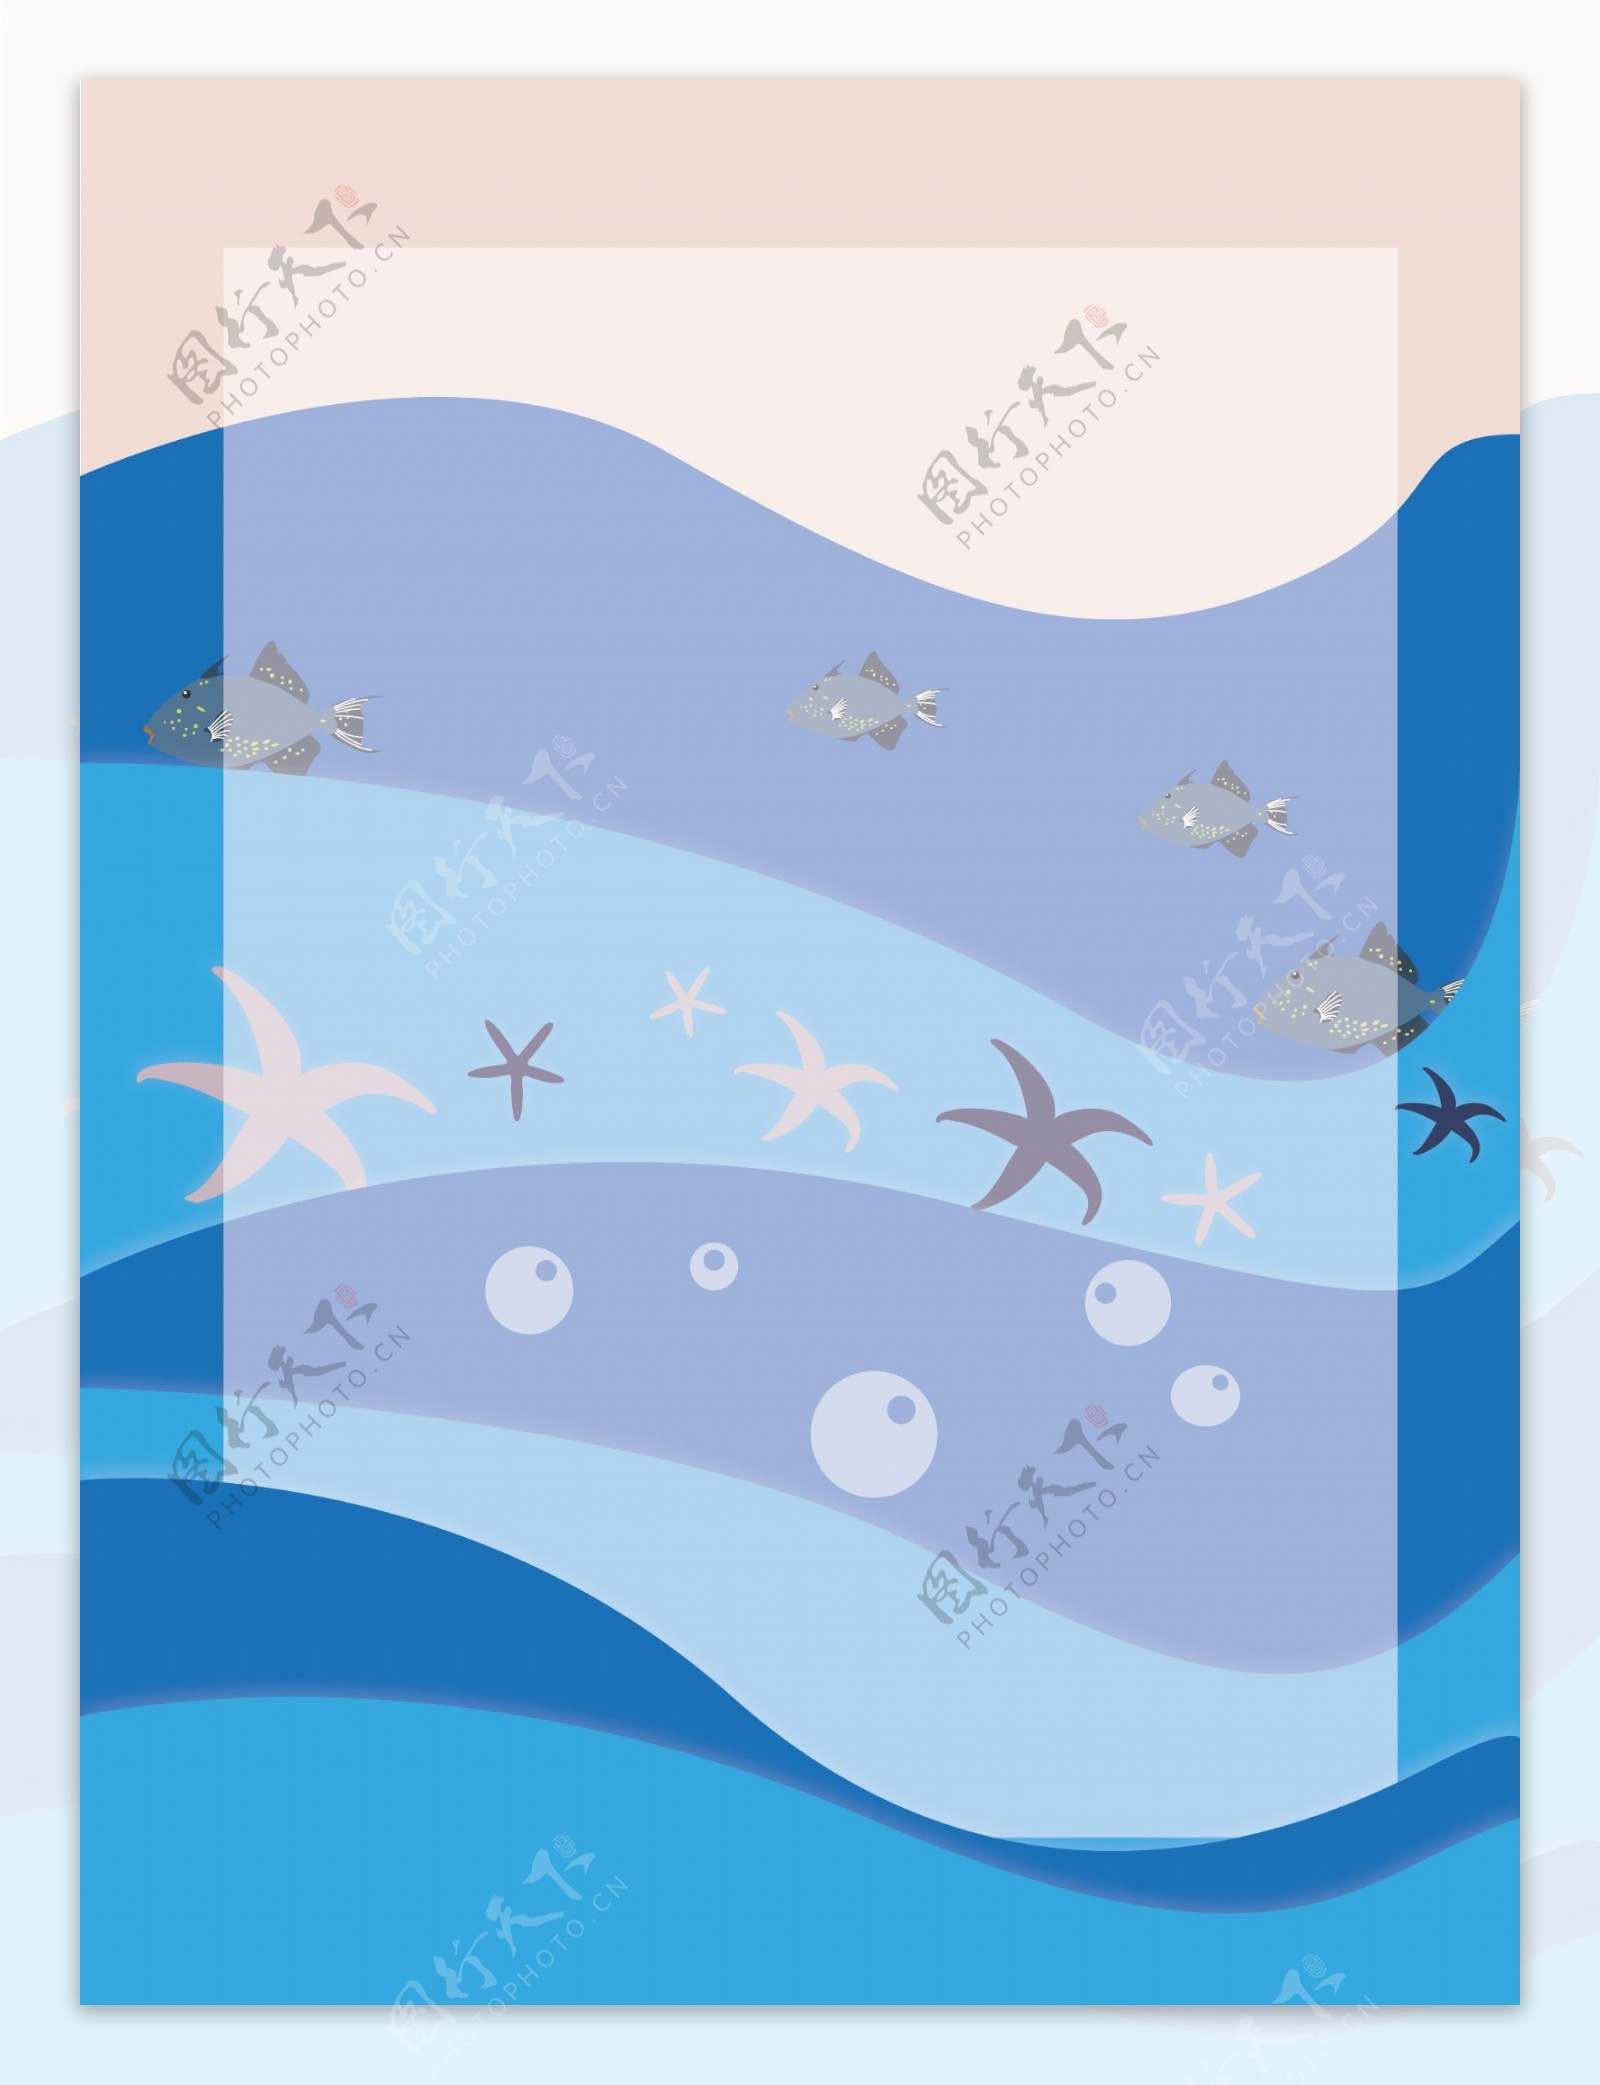 全原创蓝色波浪海洋小动物鱼类边框背景